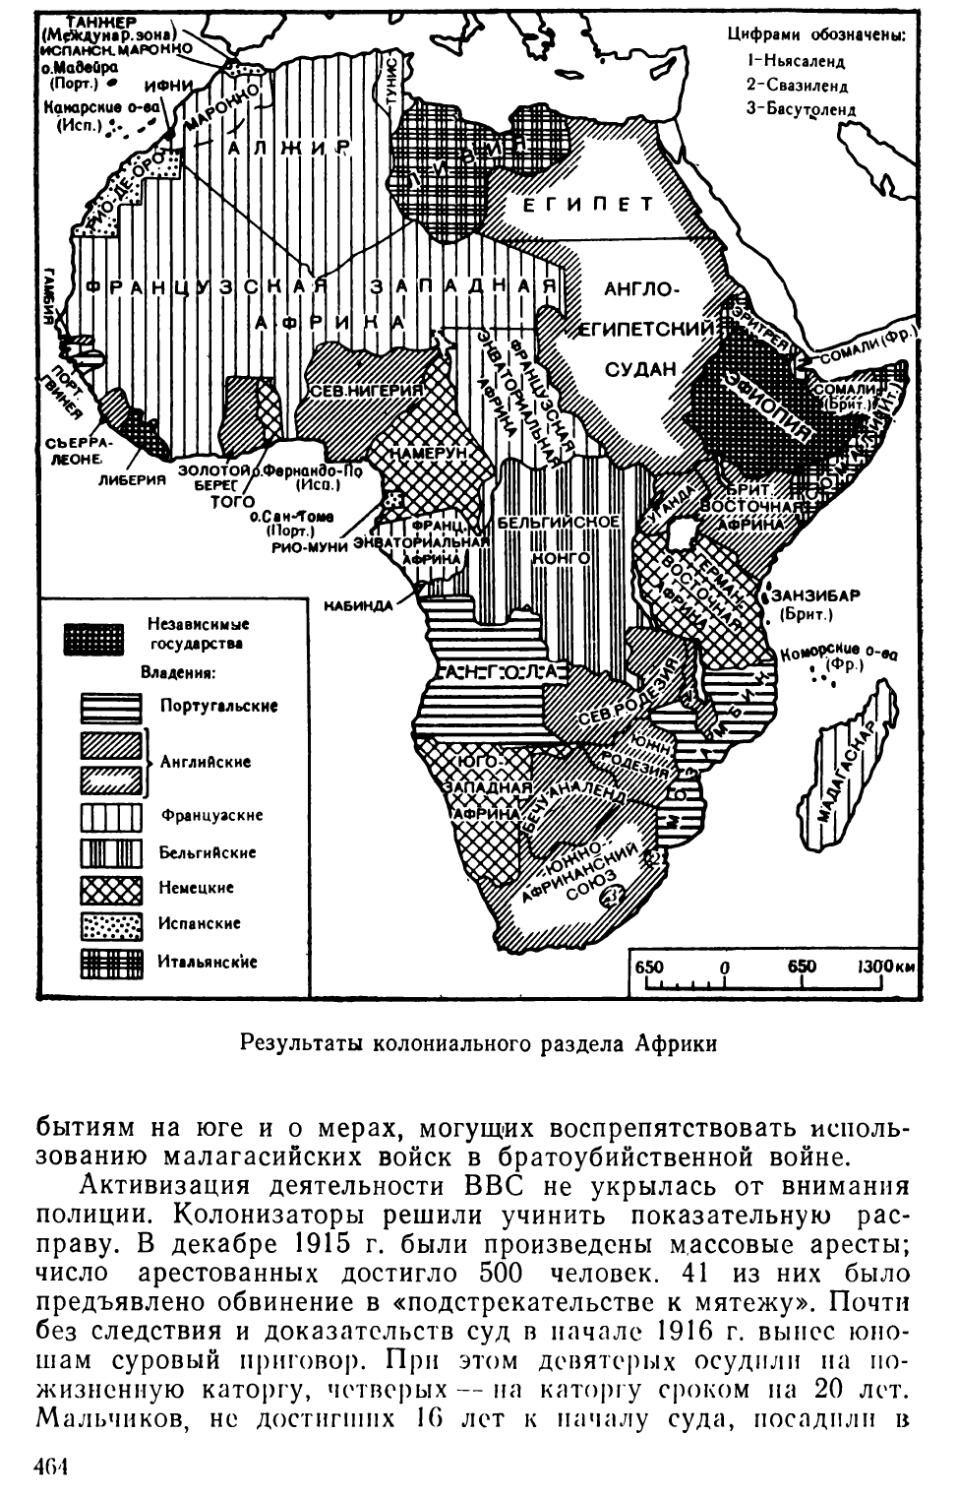 Результаты колониального раздела Африки